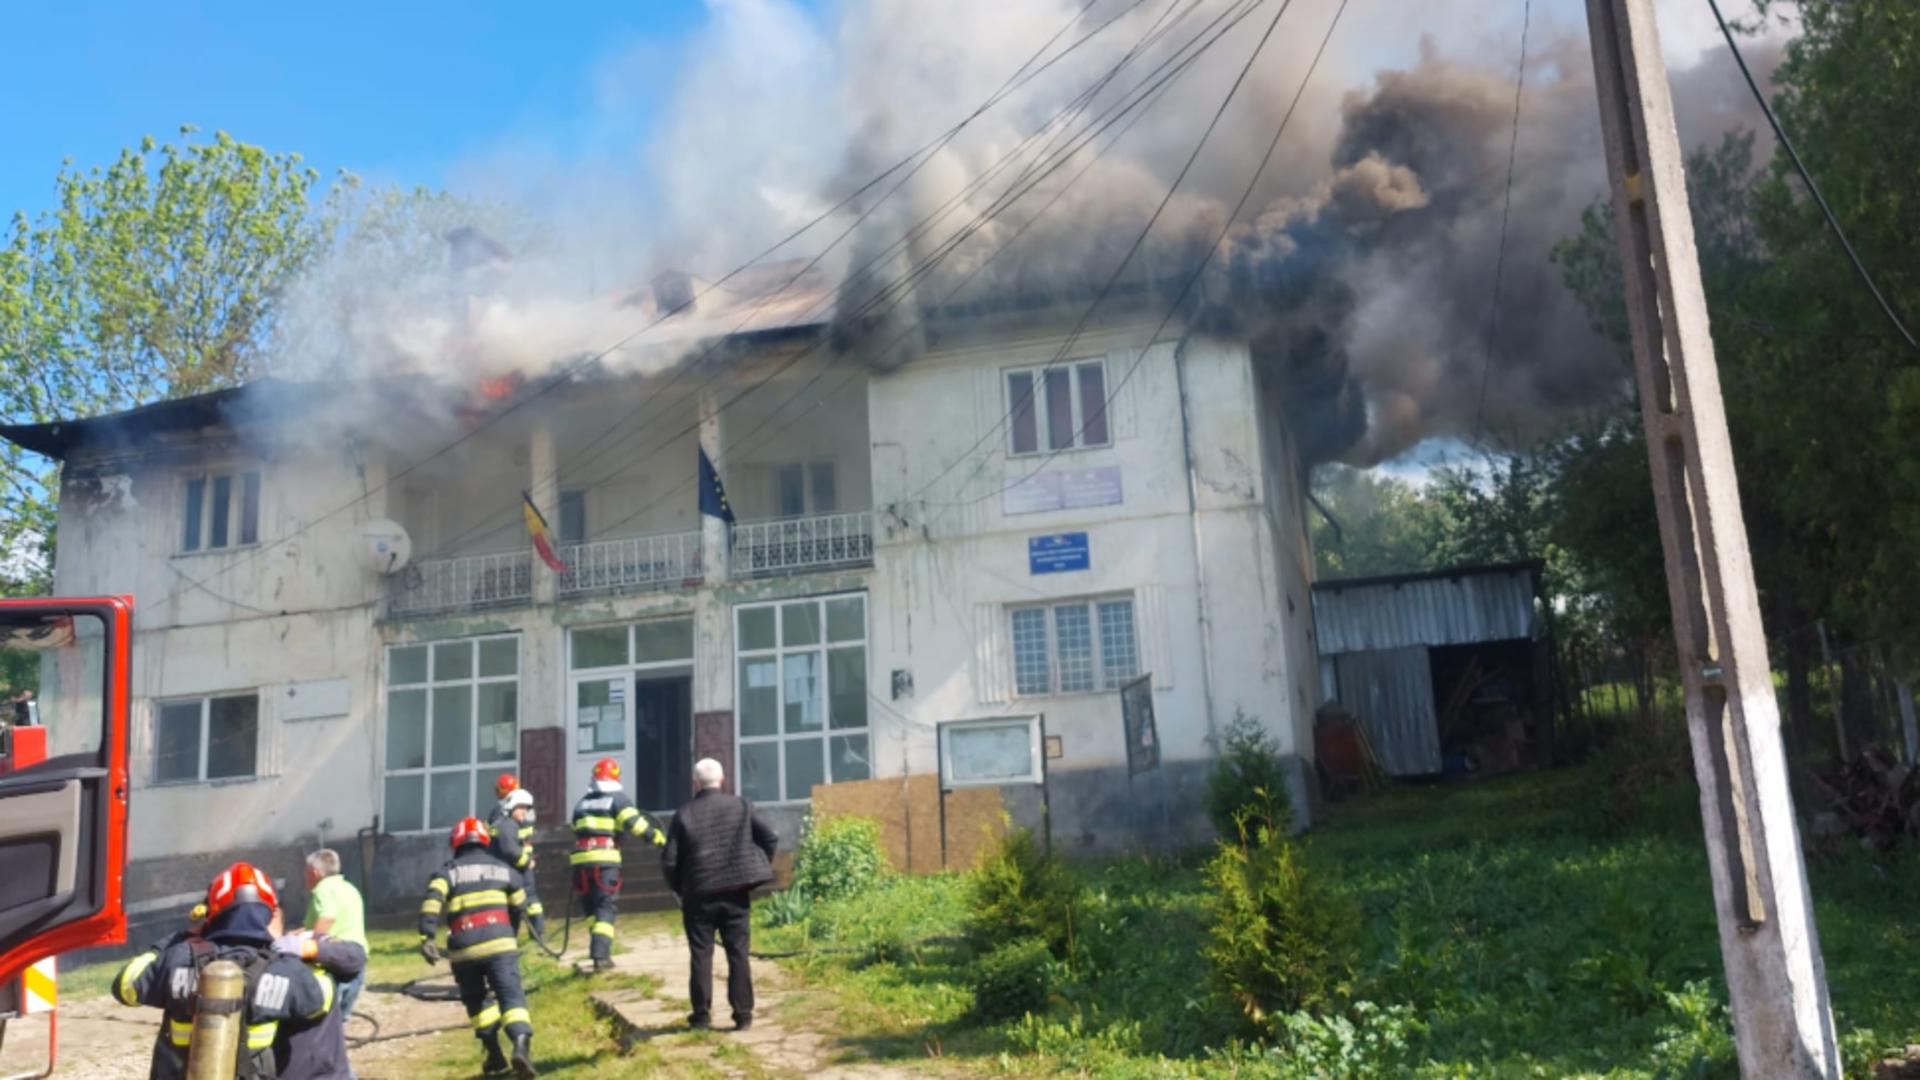 Incendiu la o primărie din Dolj: planșeul de la etajul 1 s-a prăbușit, în două camere. Intervin pompierii